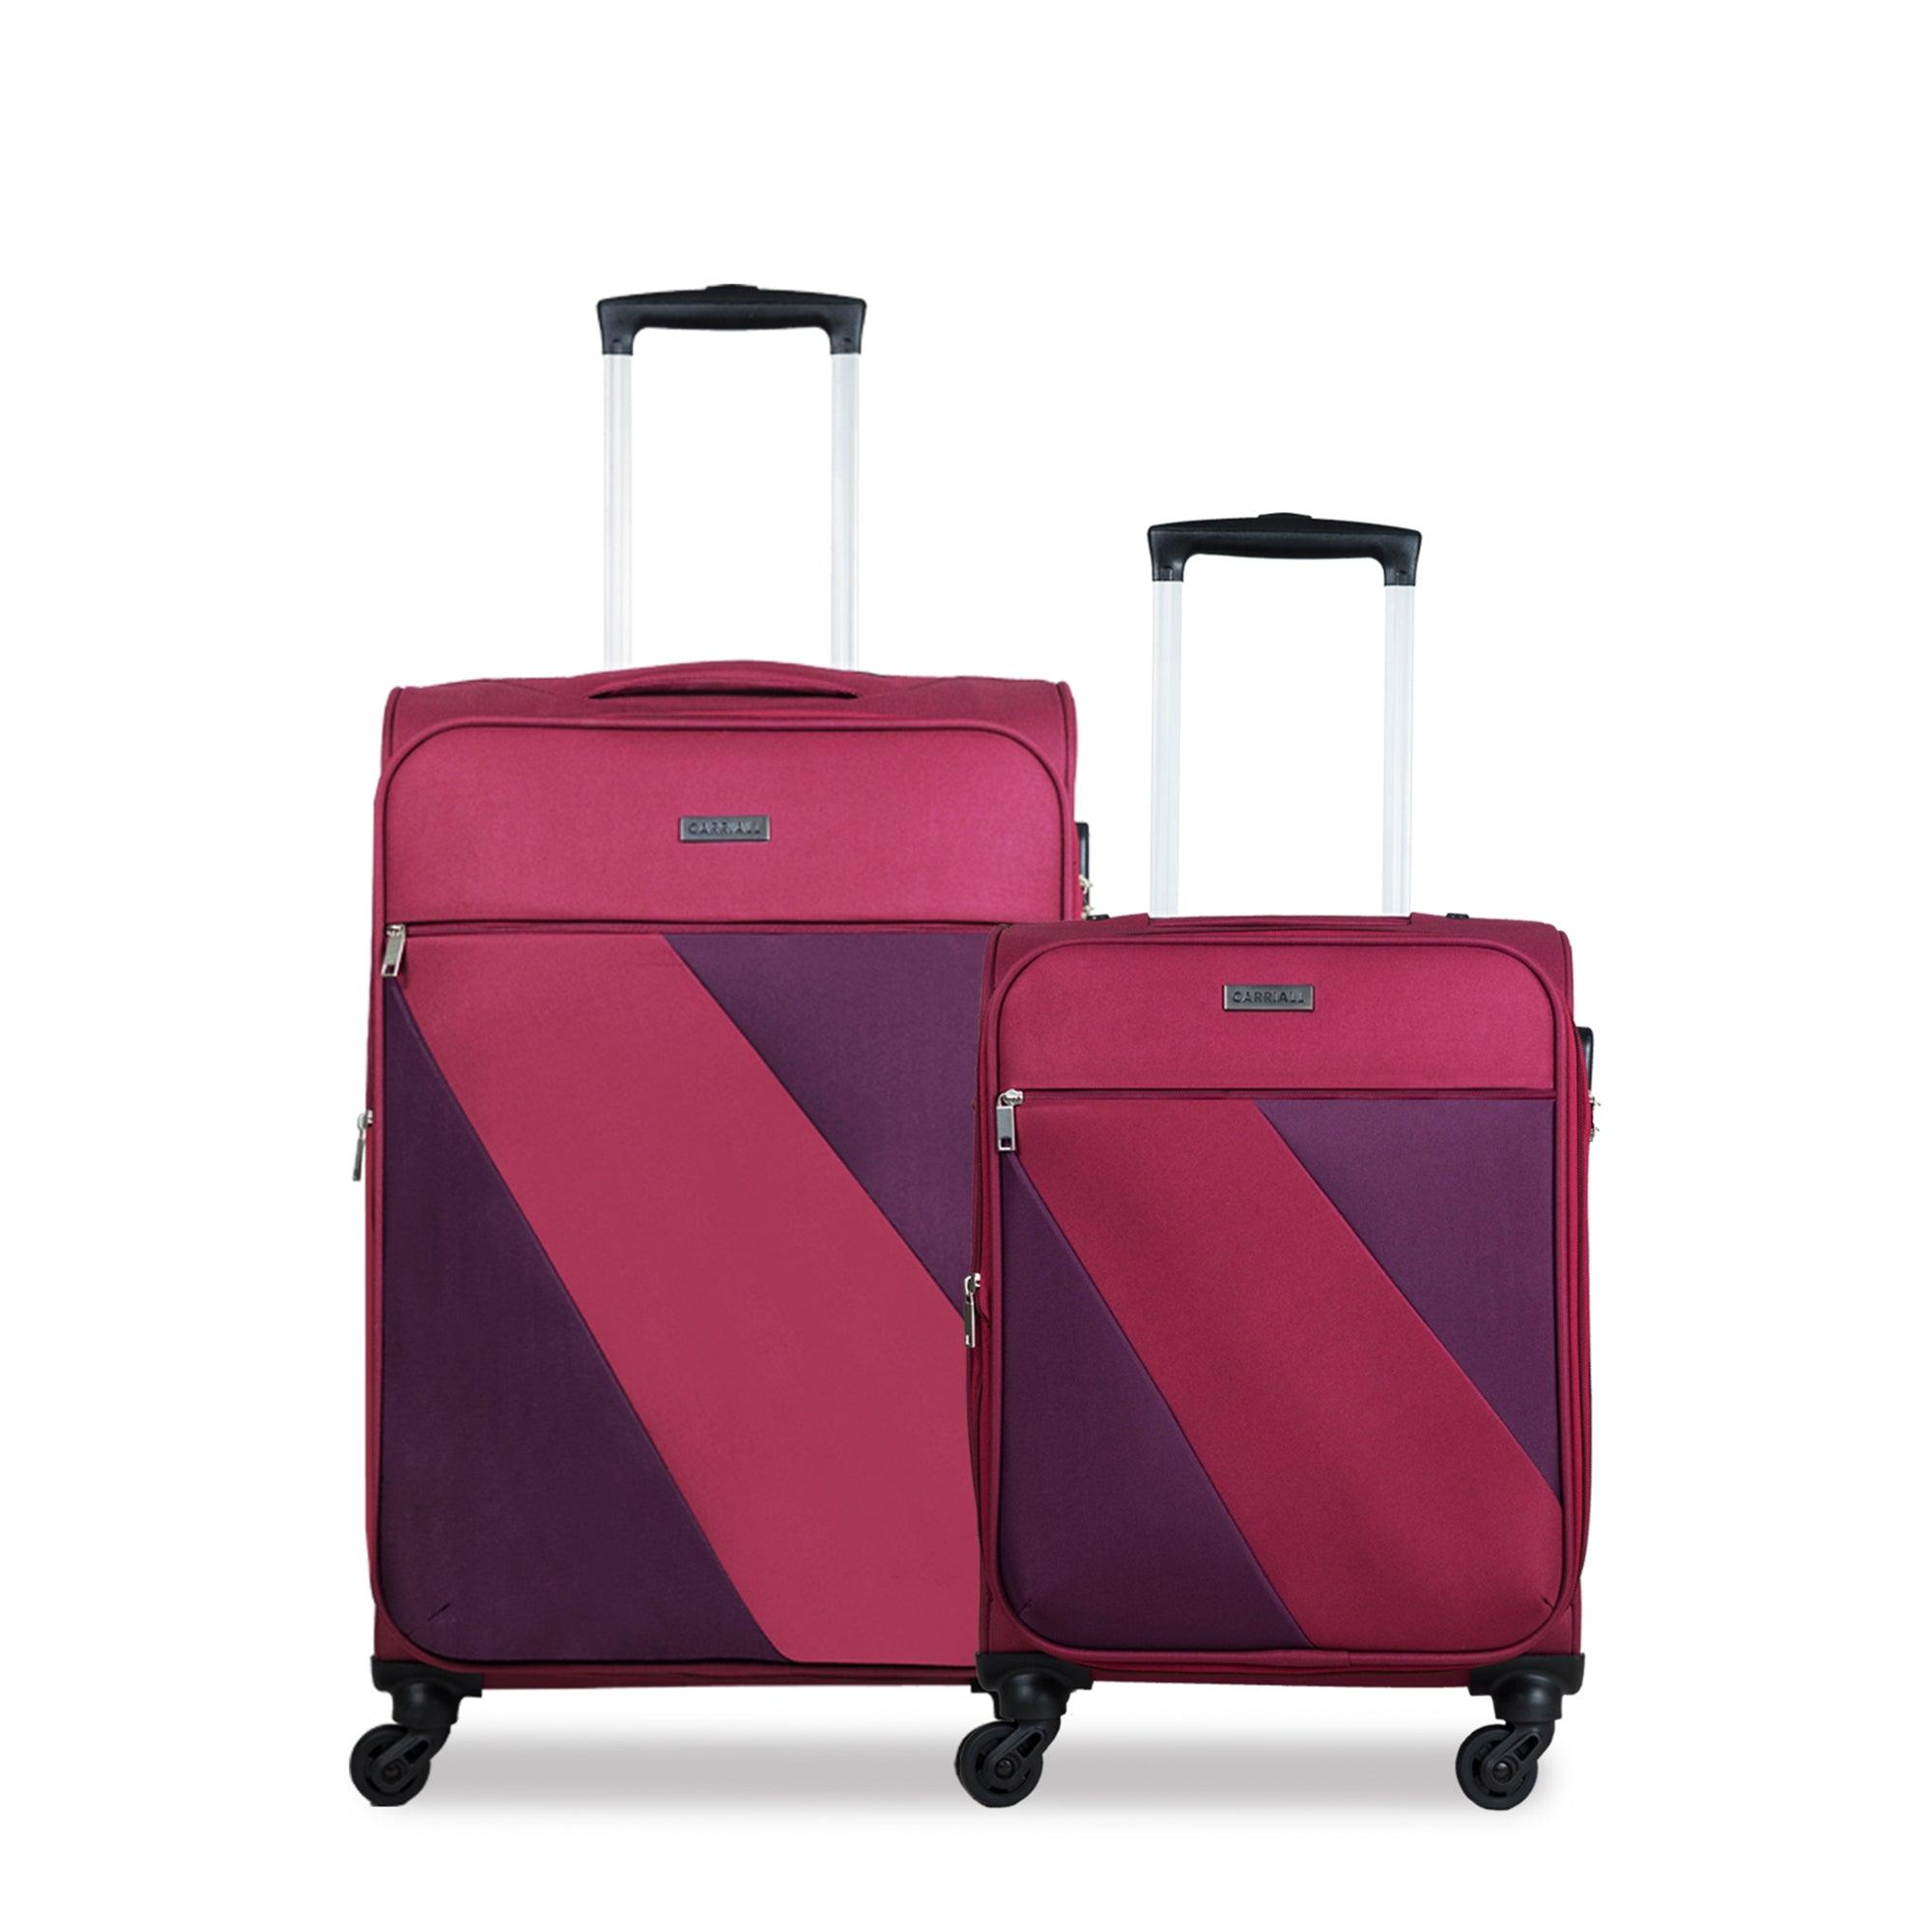 Ace Luggage Set of 2